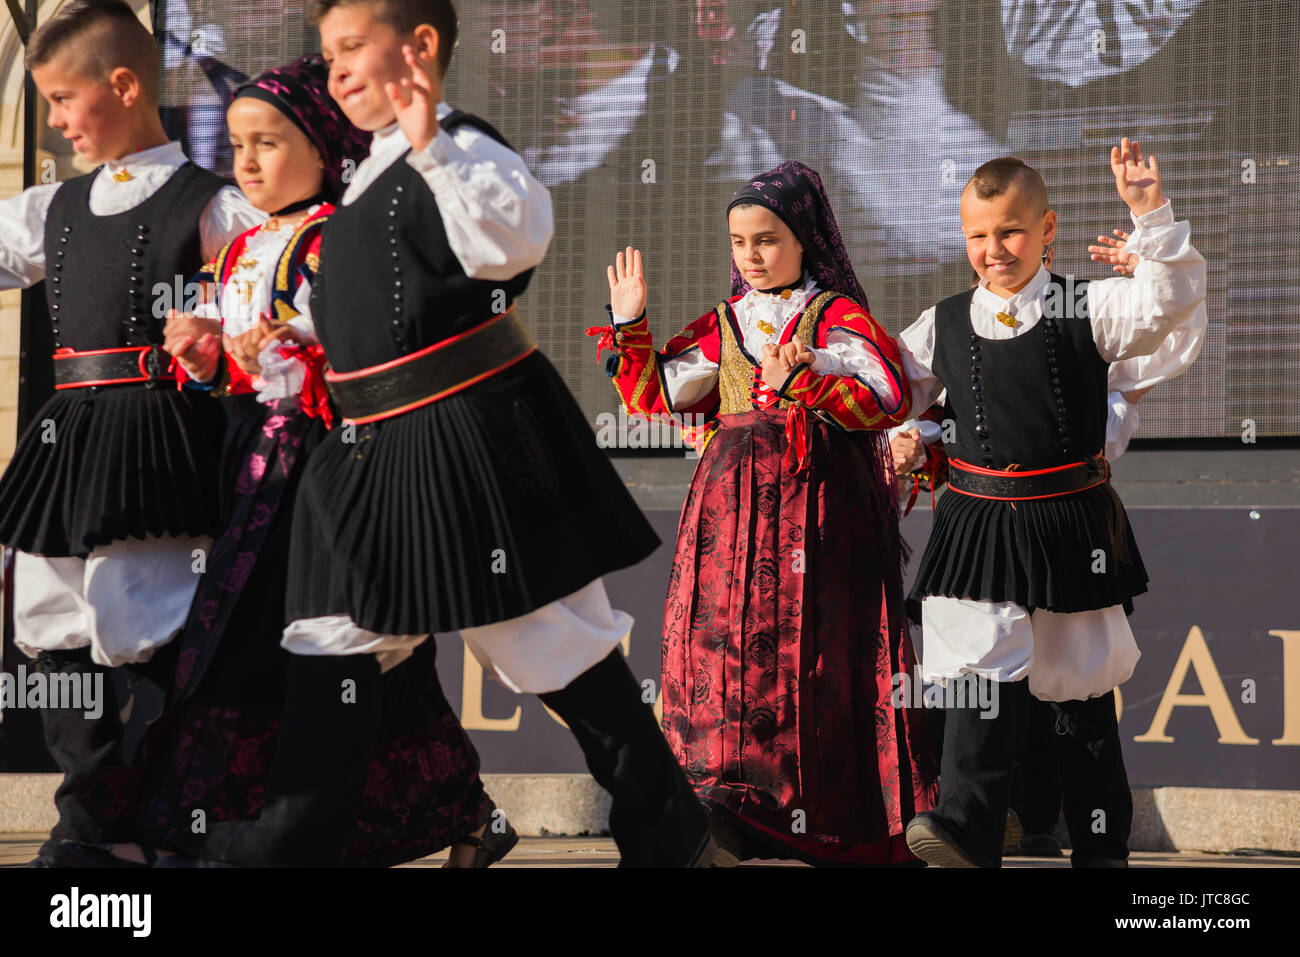 Sardinia folk festival, a children's folk dance group participate in the La Cavalcata festival in Sassari, Sardinia. Stock Photo